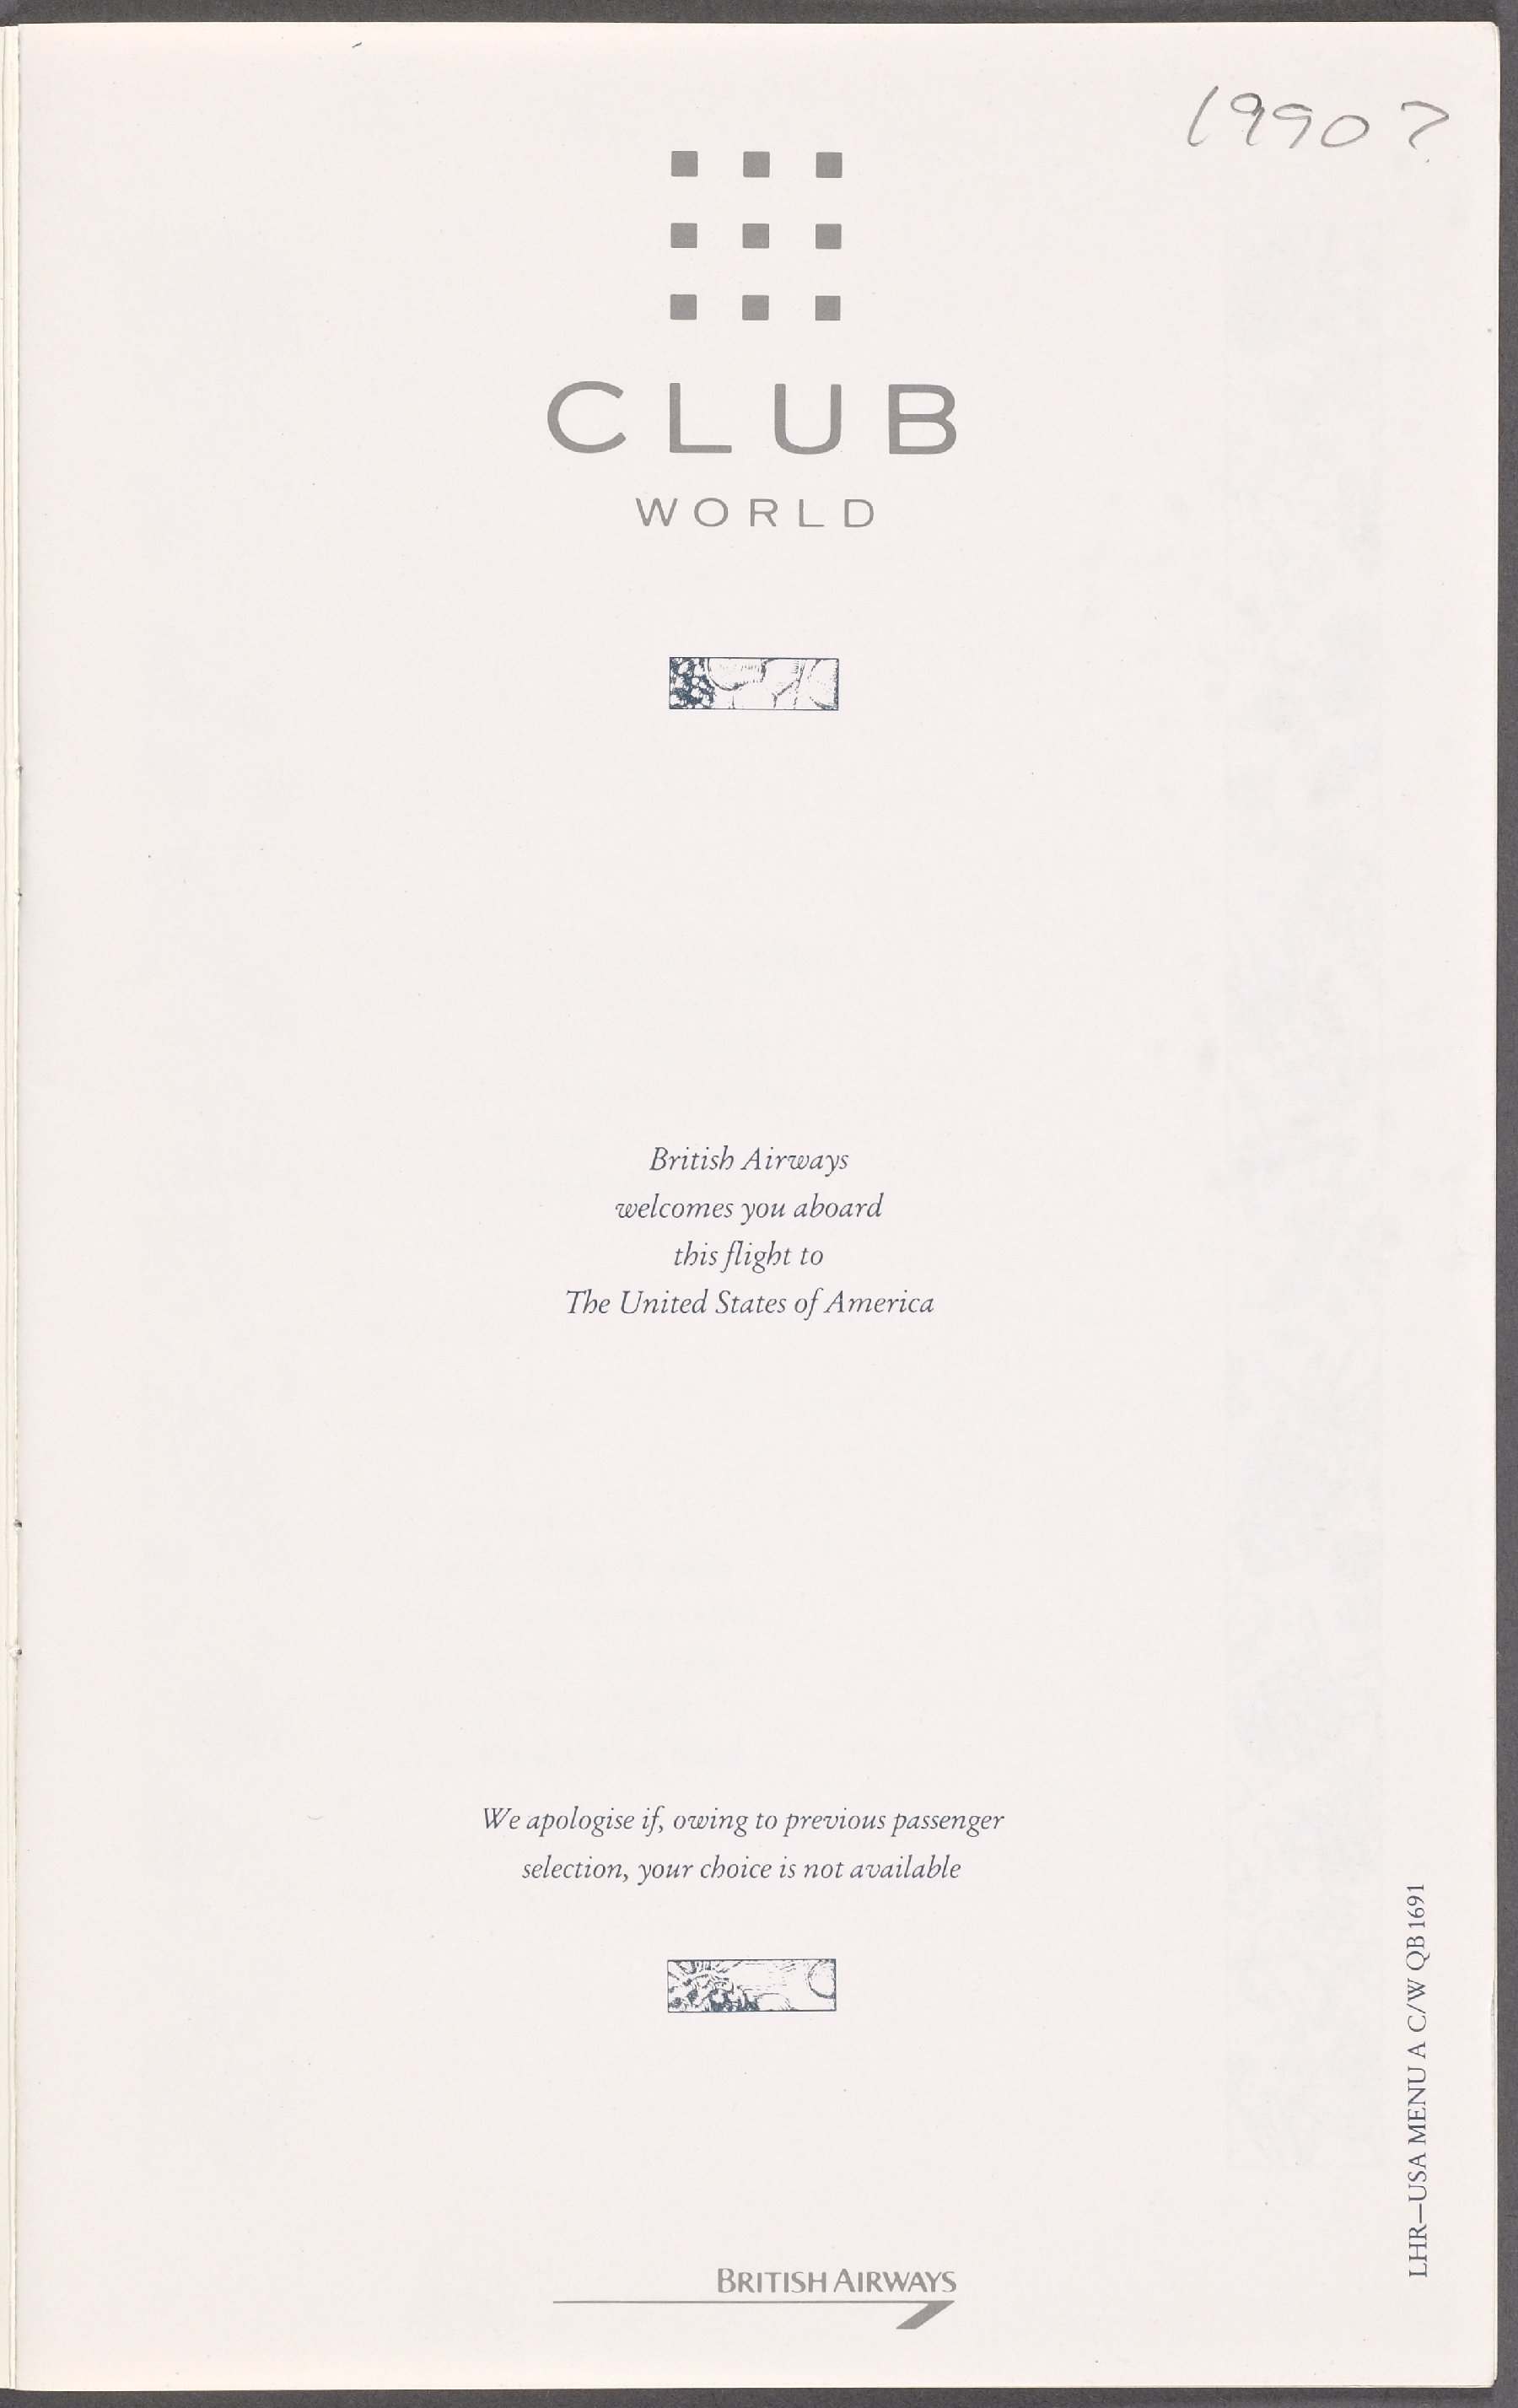 British Airways Club World 1990 menu page 2